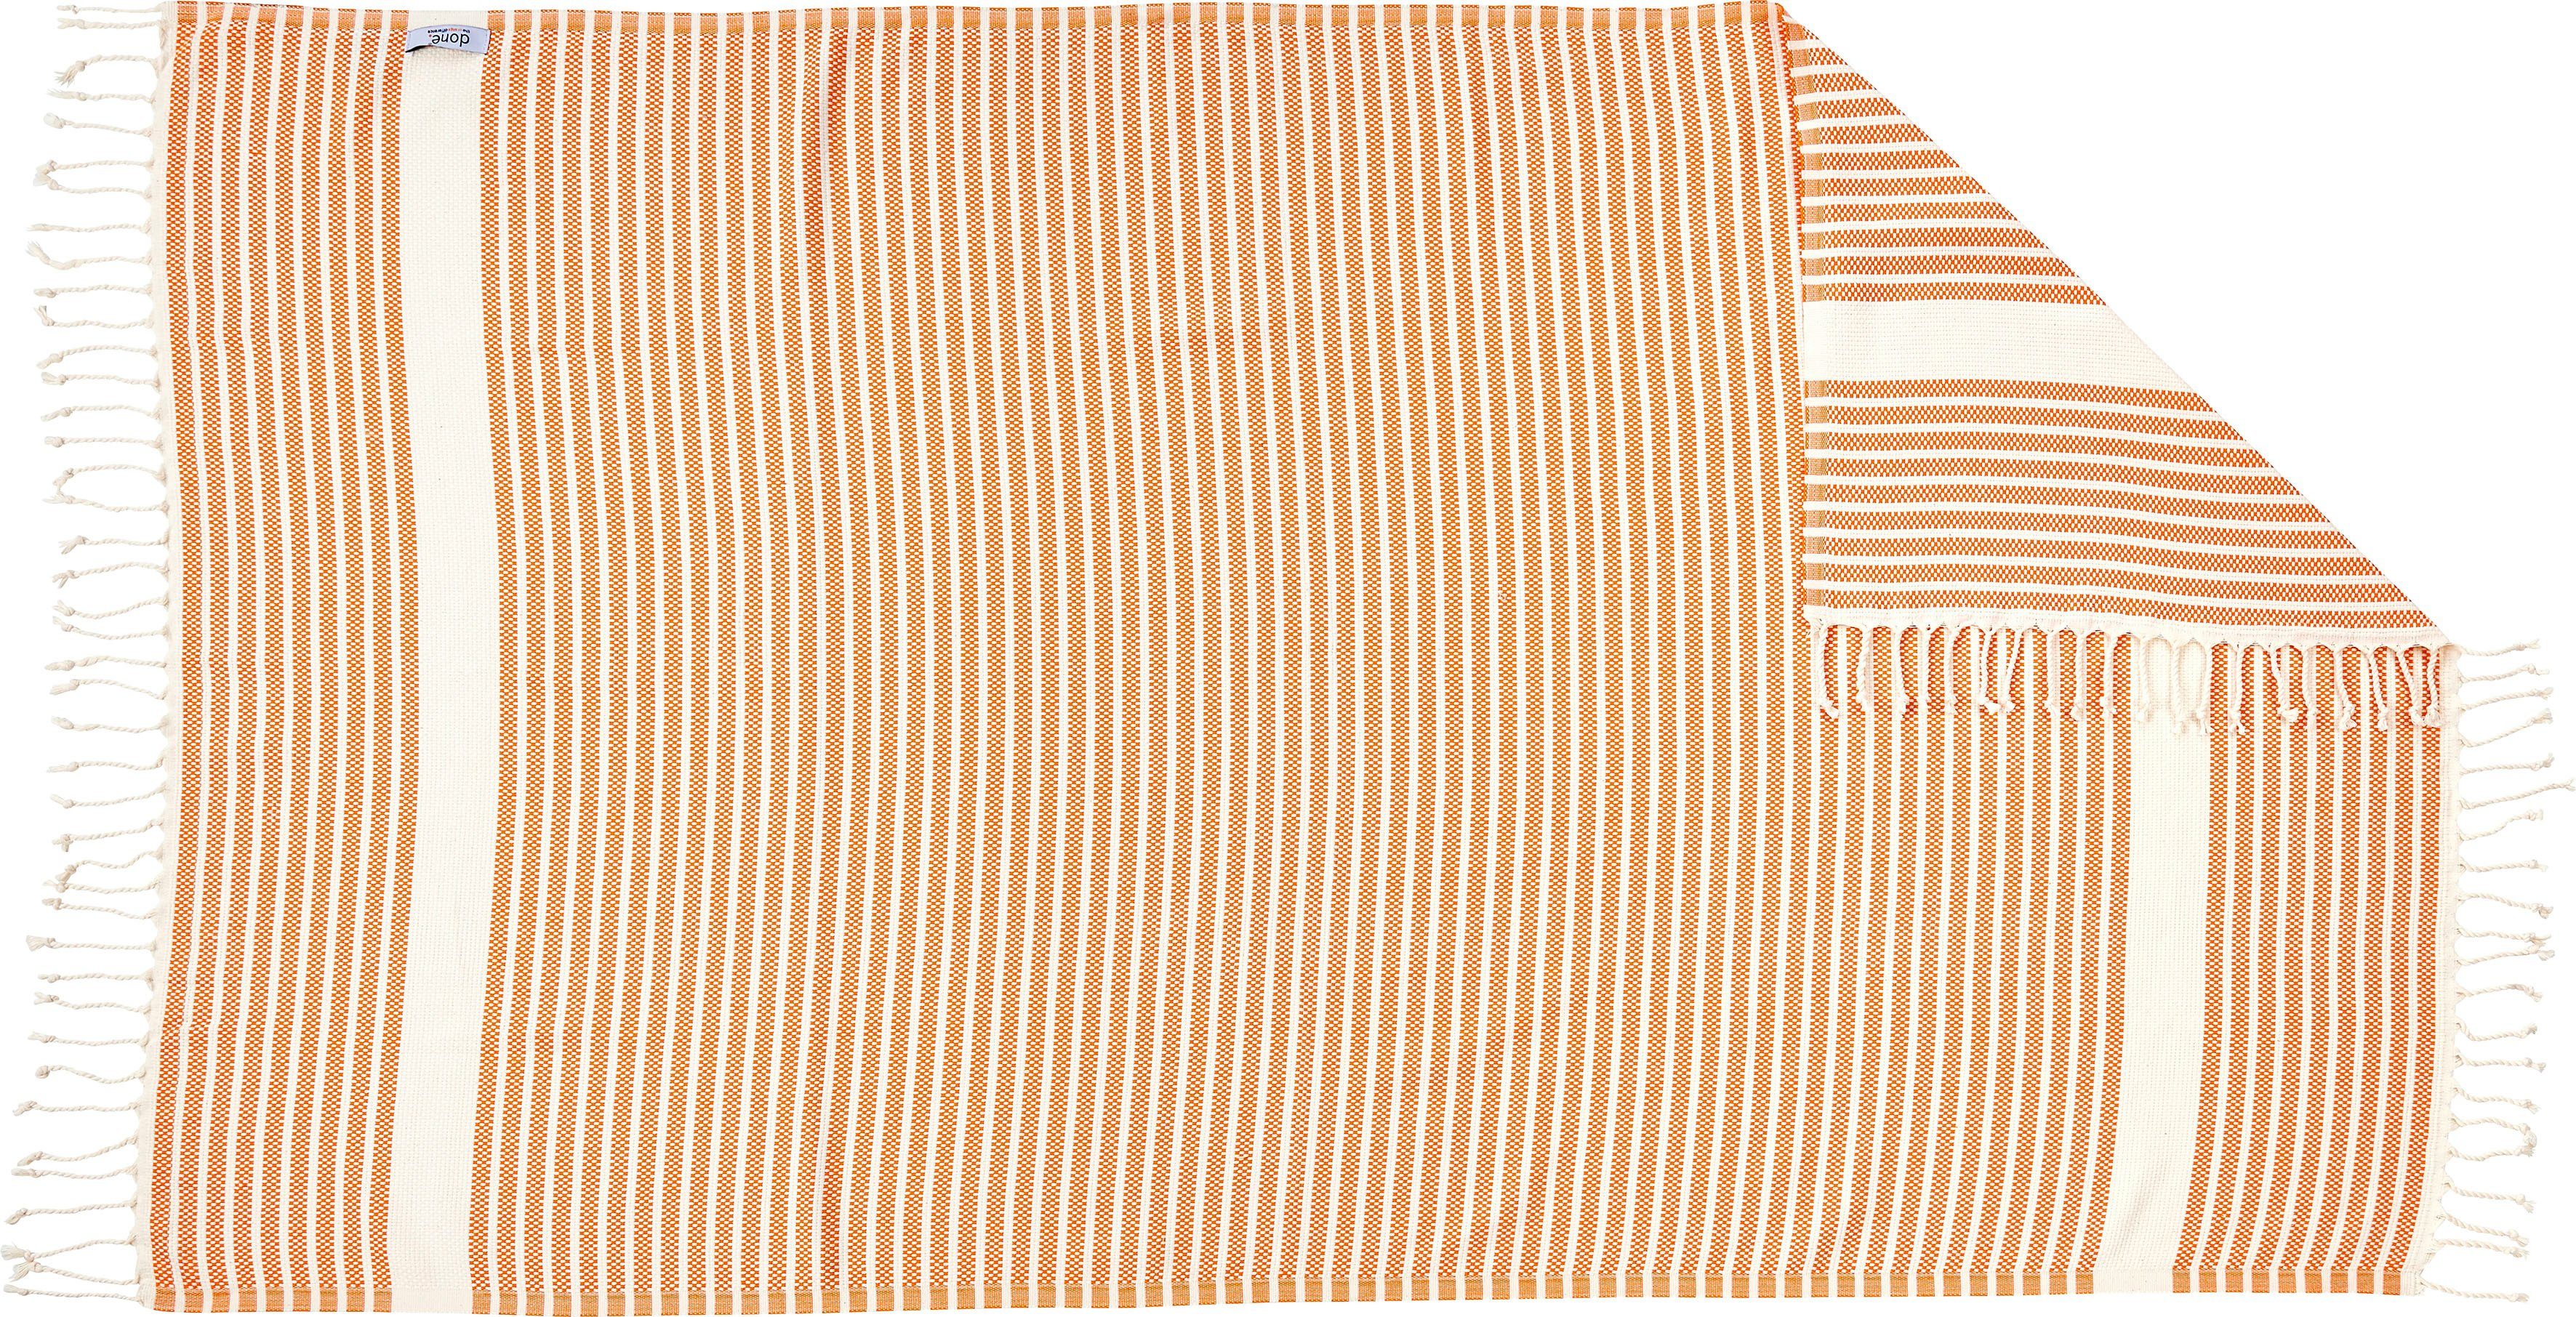 mit done.®, Lounge Stripes, Plaid orange/beige Fransen Plaid Leichtes geknoteten